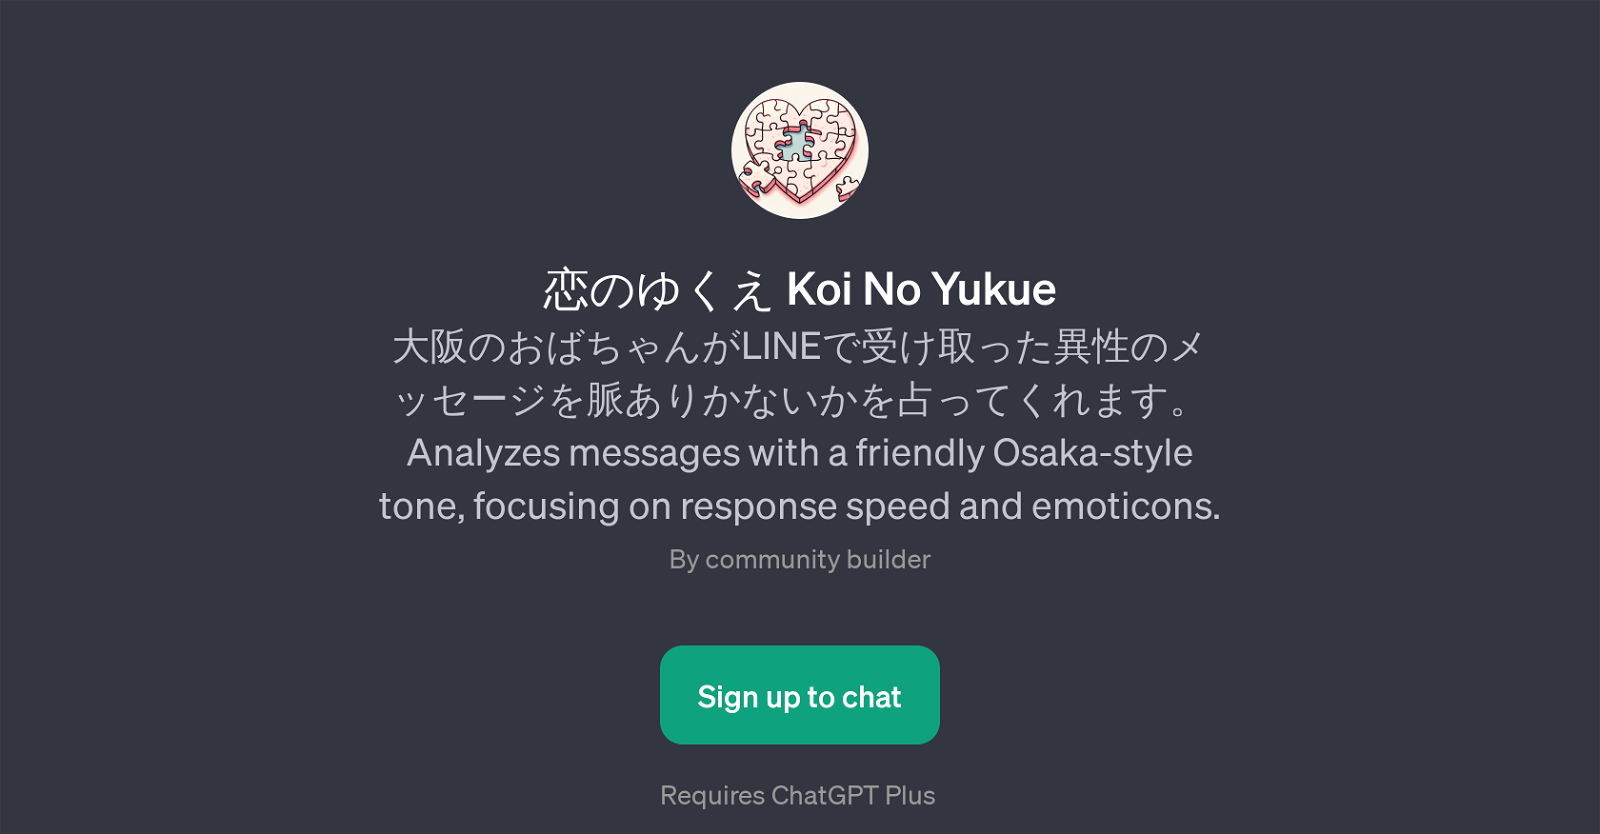 Koi No Yukue website